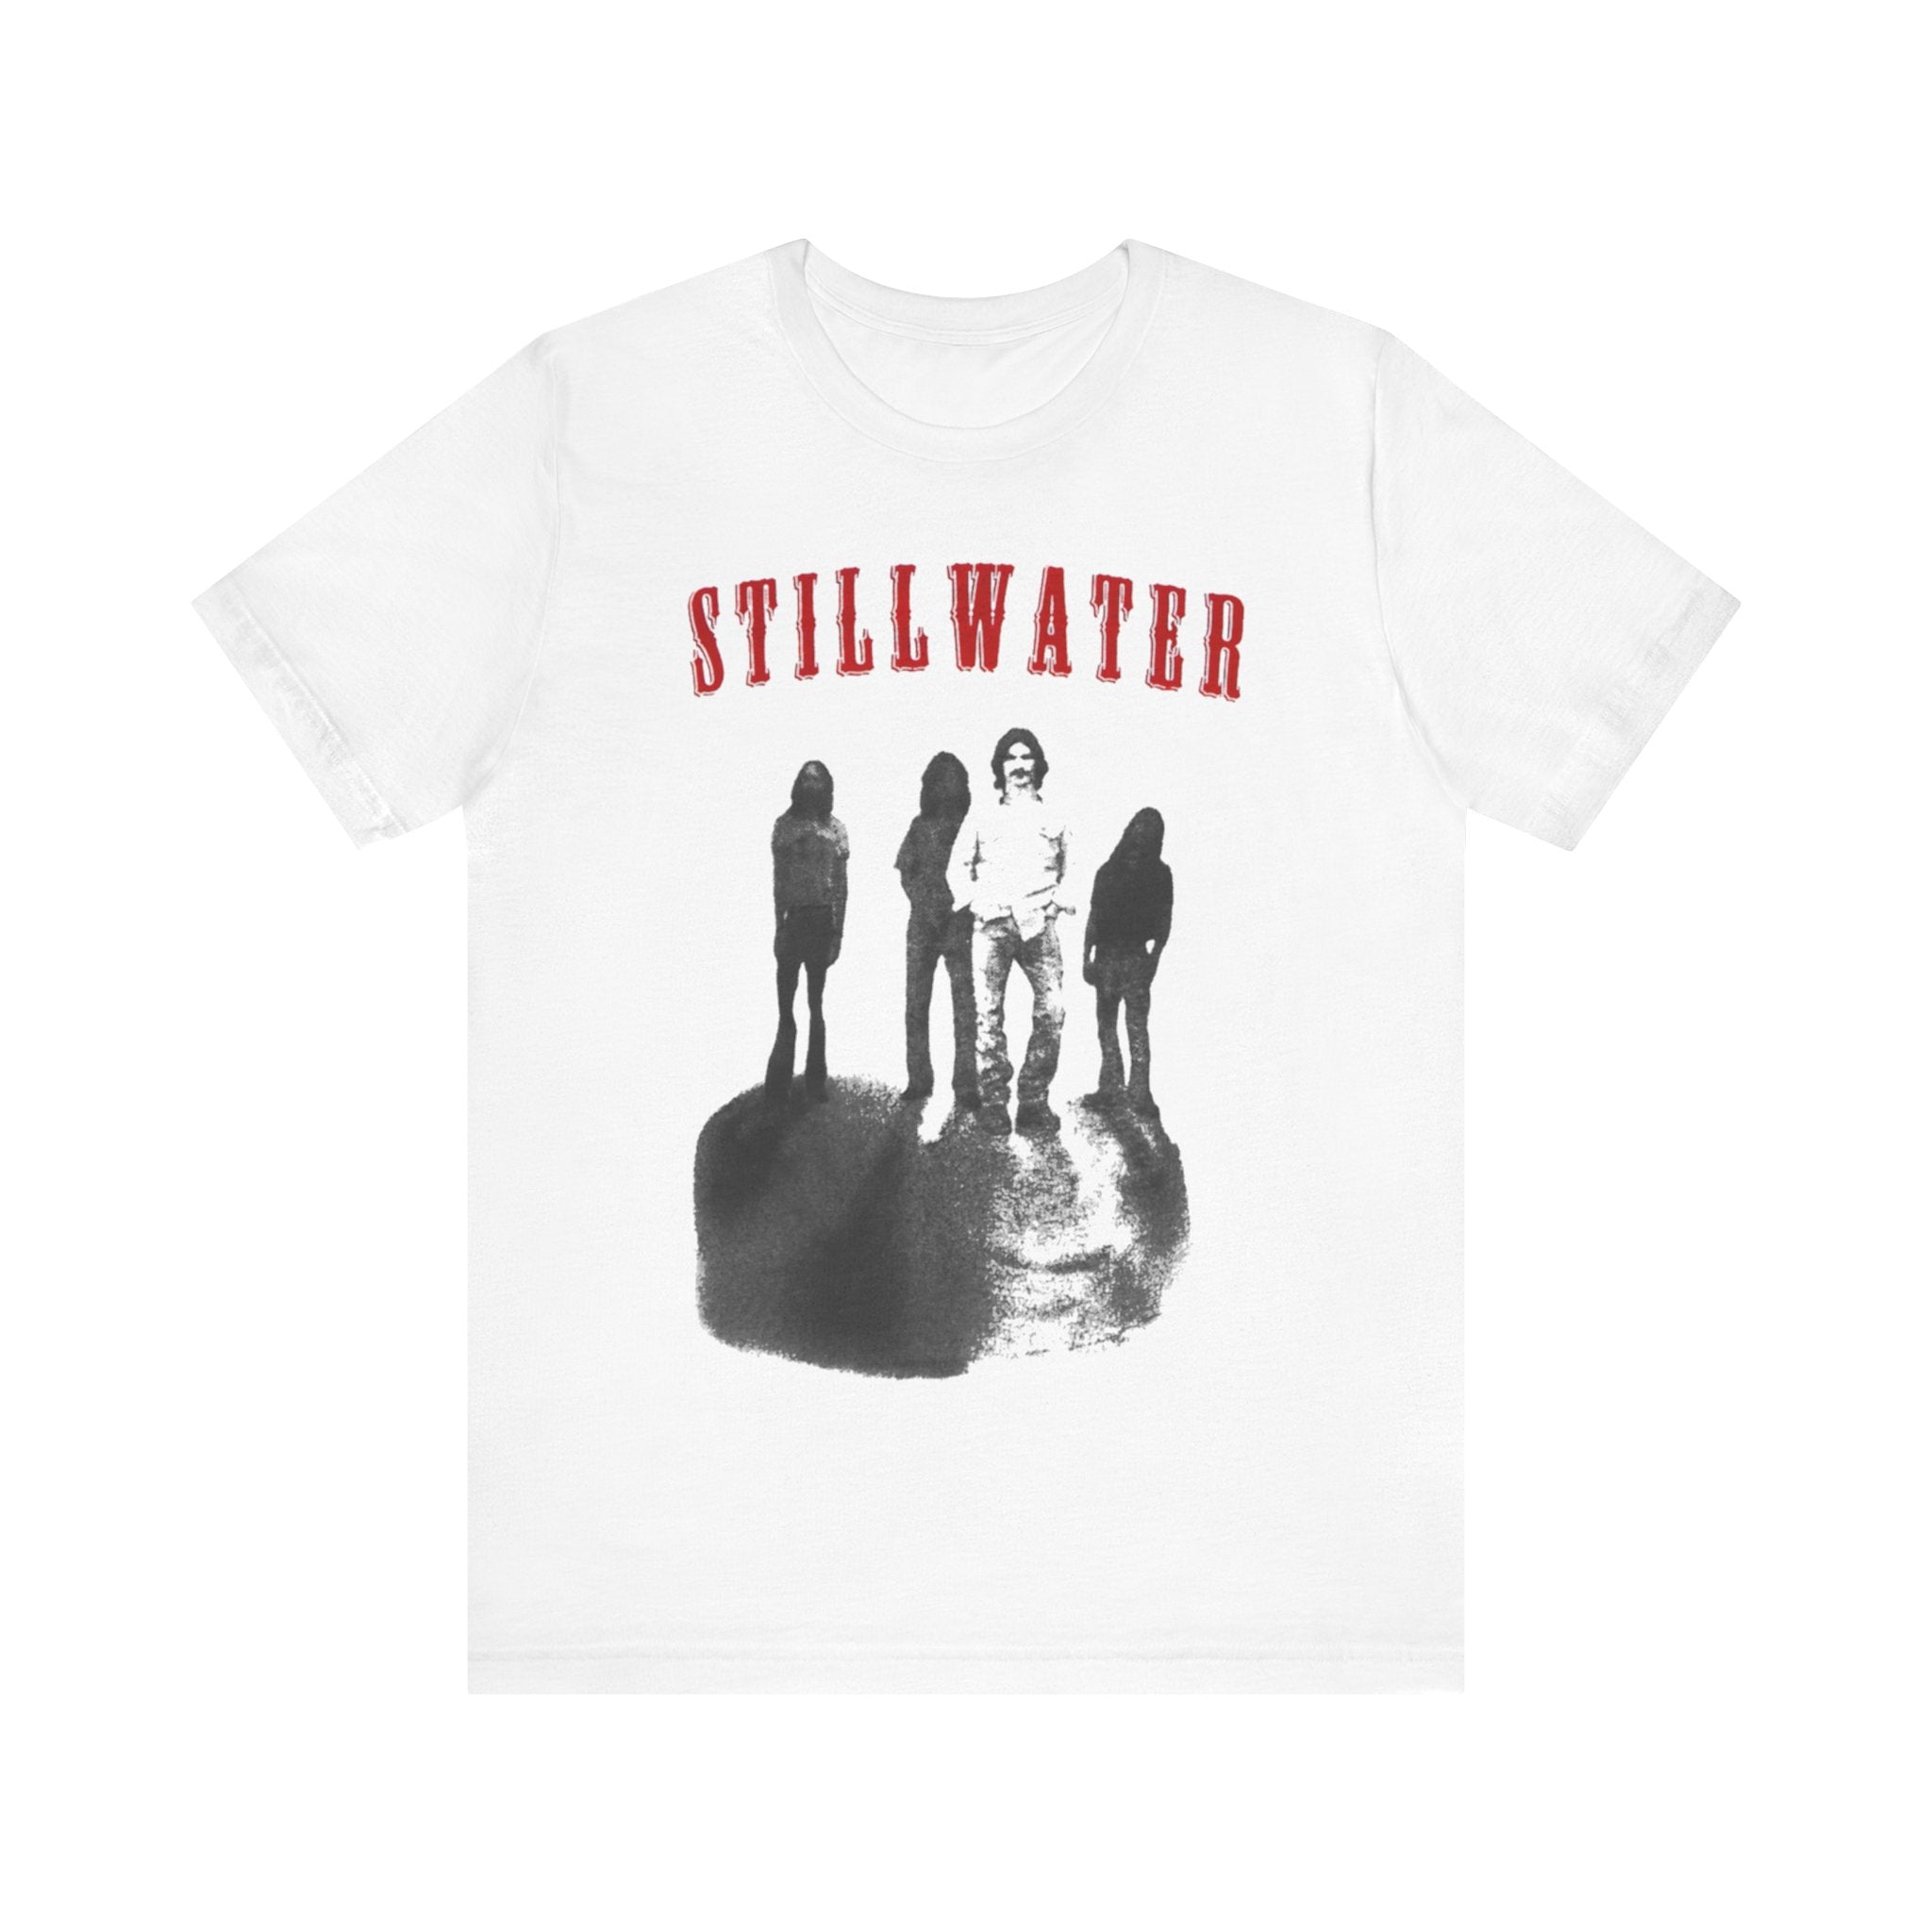 Stillwater: Rocking the Stage